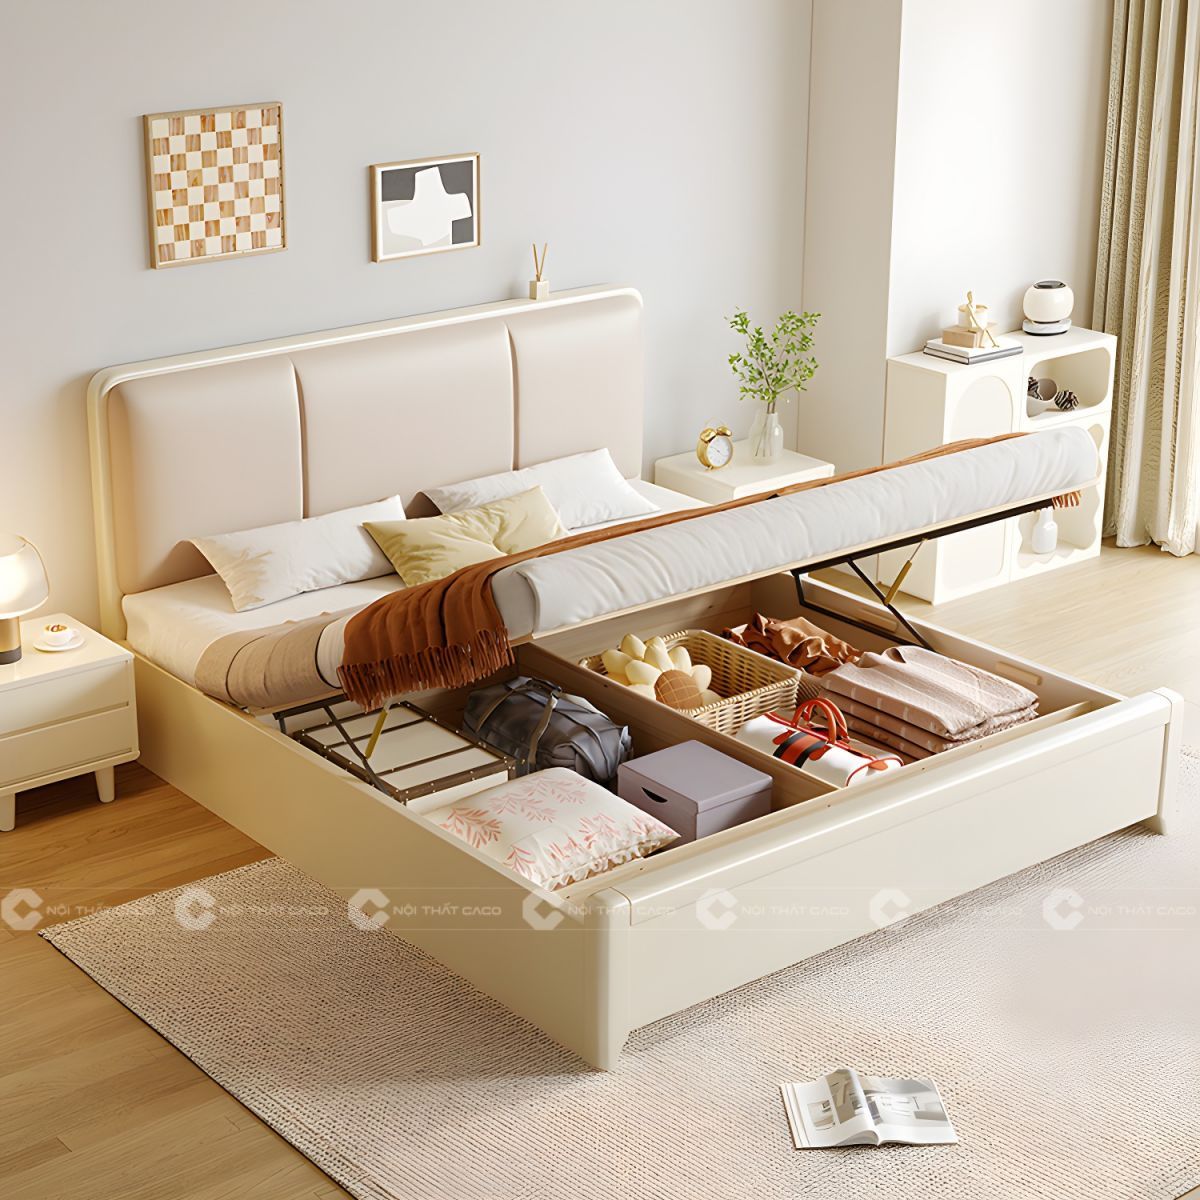 Giường ngủ gỗ tự nhiên màu trắng chắc chắn